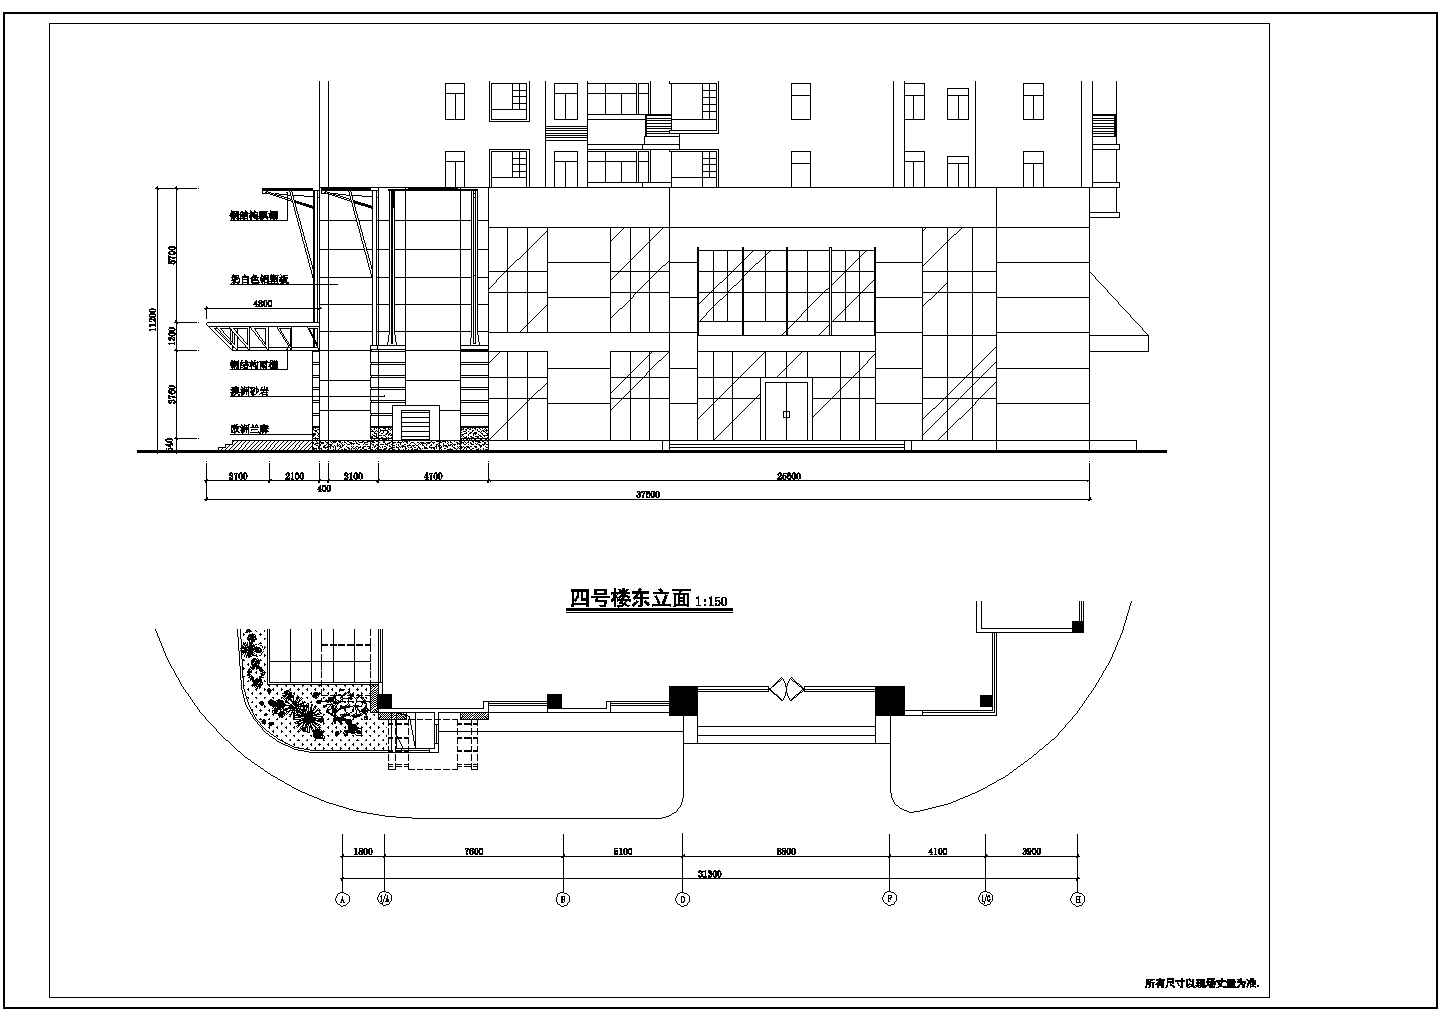 常熟虞山花园商业街全套建筑施工设计cad图(含地铁出口指引招牌平面图)